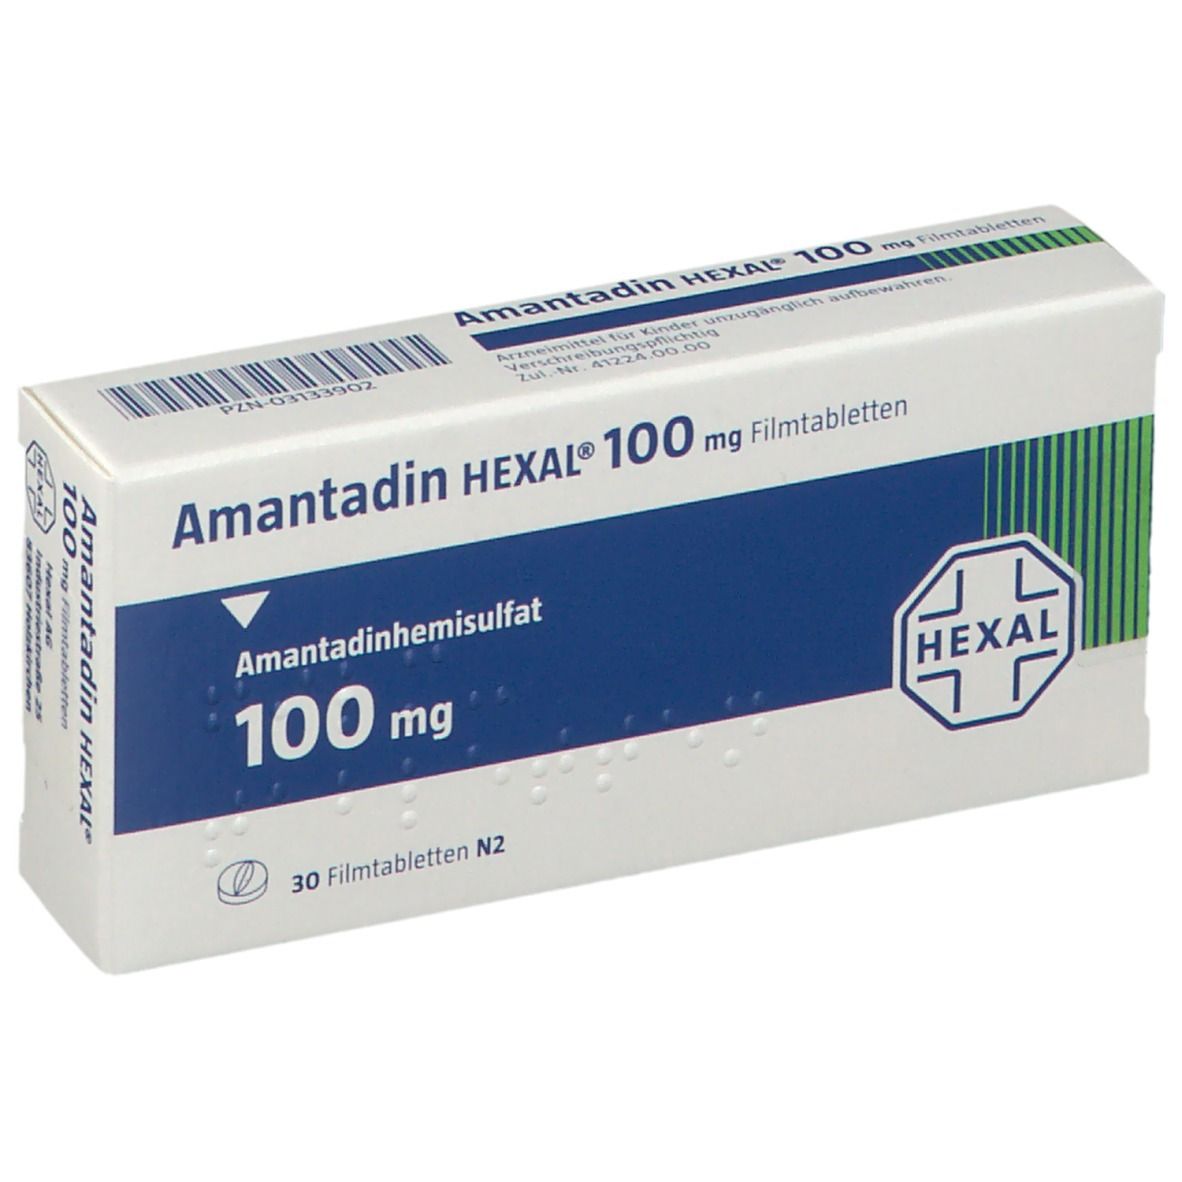 Amantadin HEXAL® 100 mg